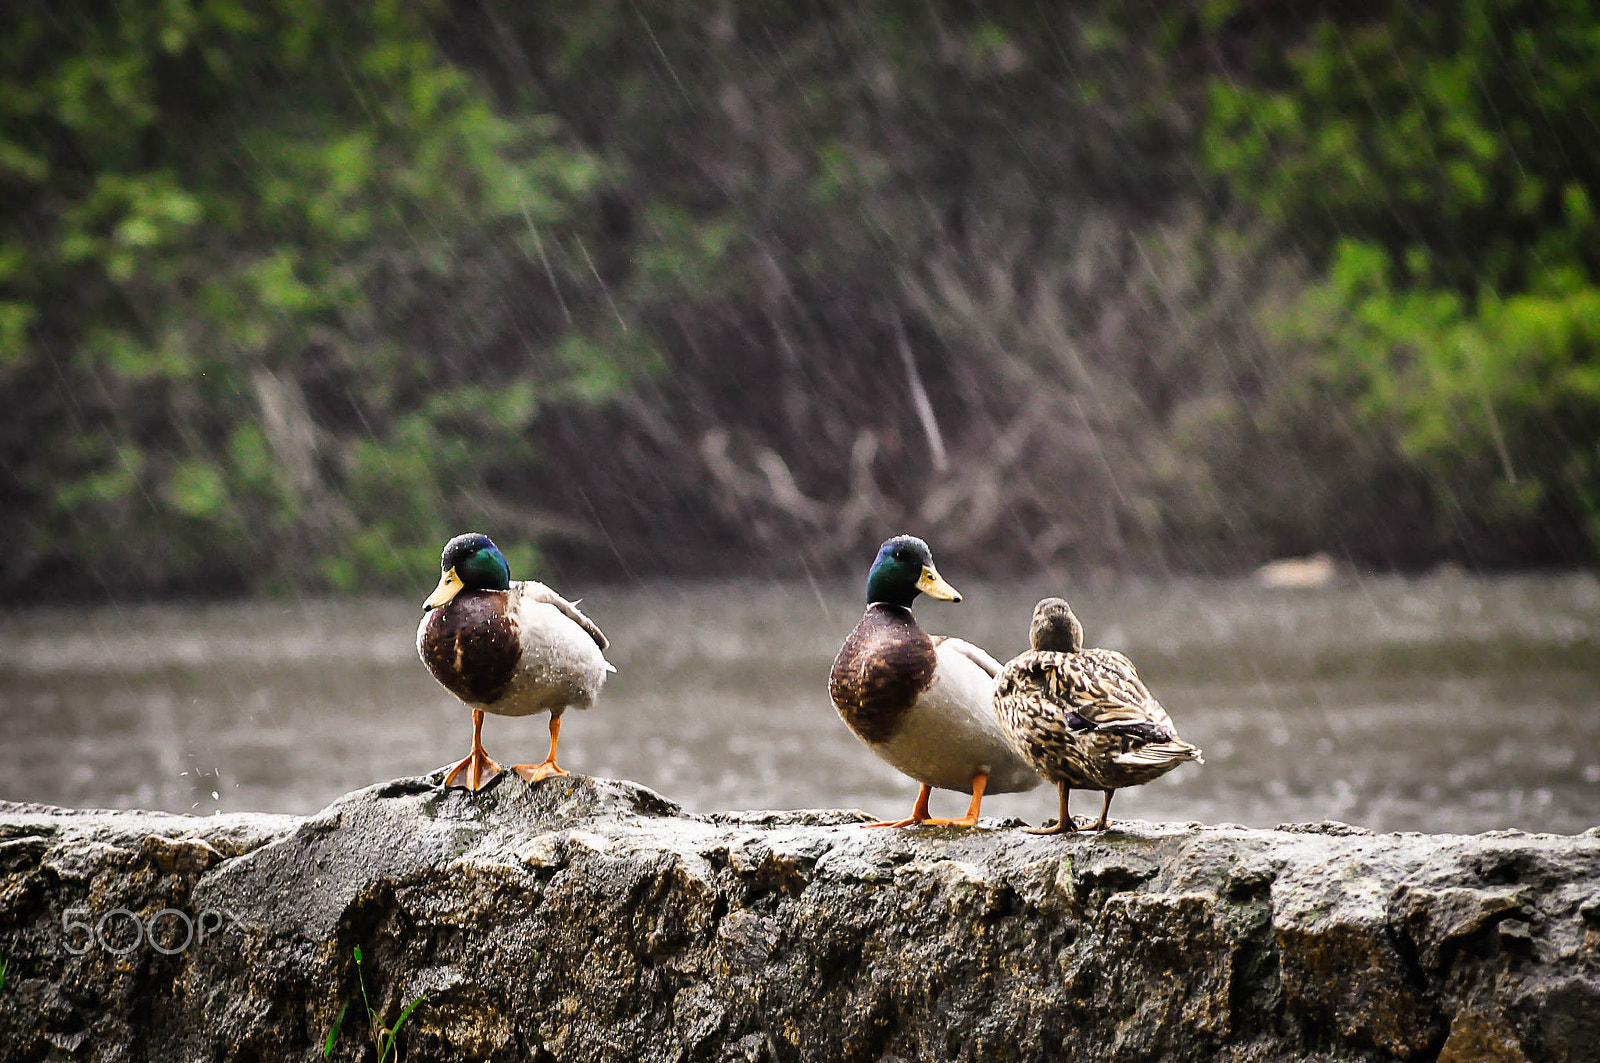 Nikon D90 + AF Zoom-Nikkor 70-210mm f/4 sample photo. Ducks on rain photography